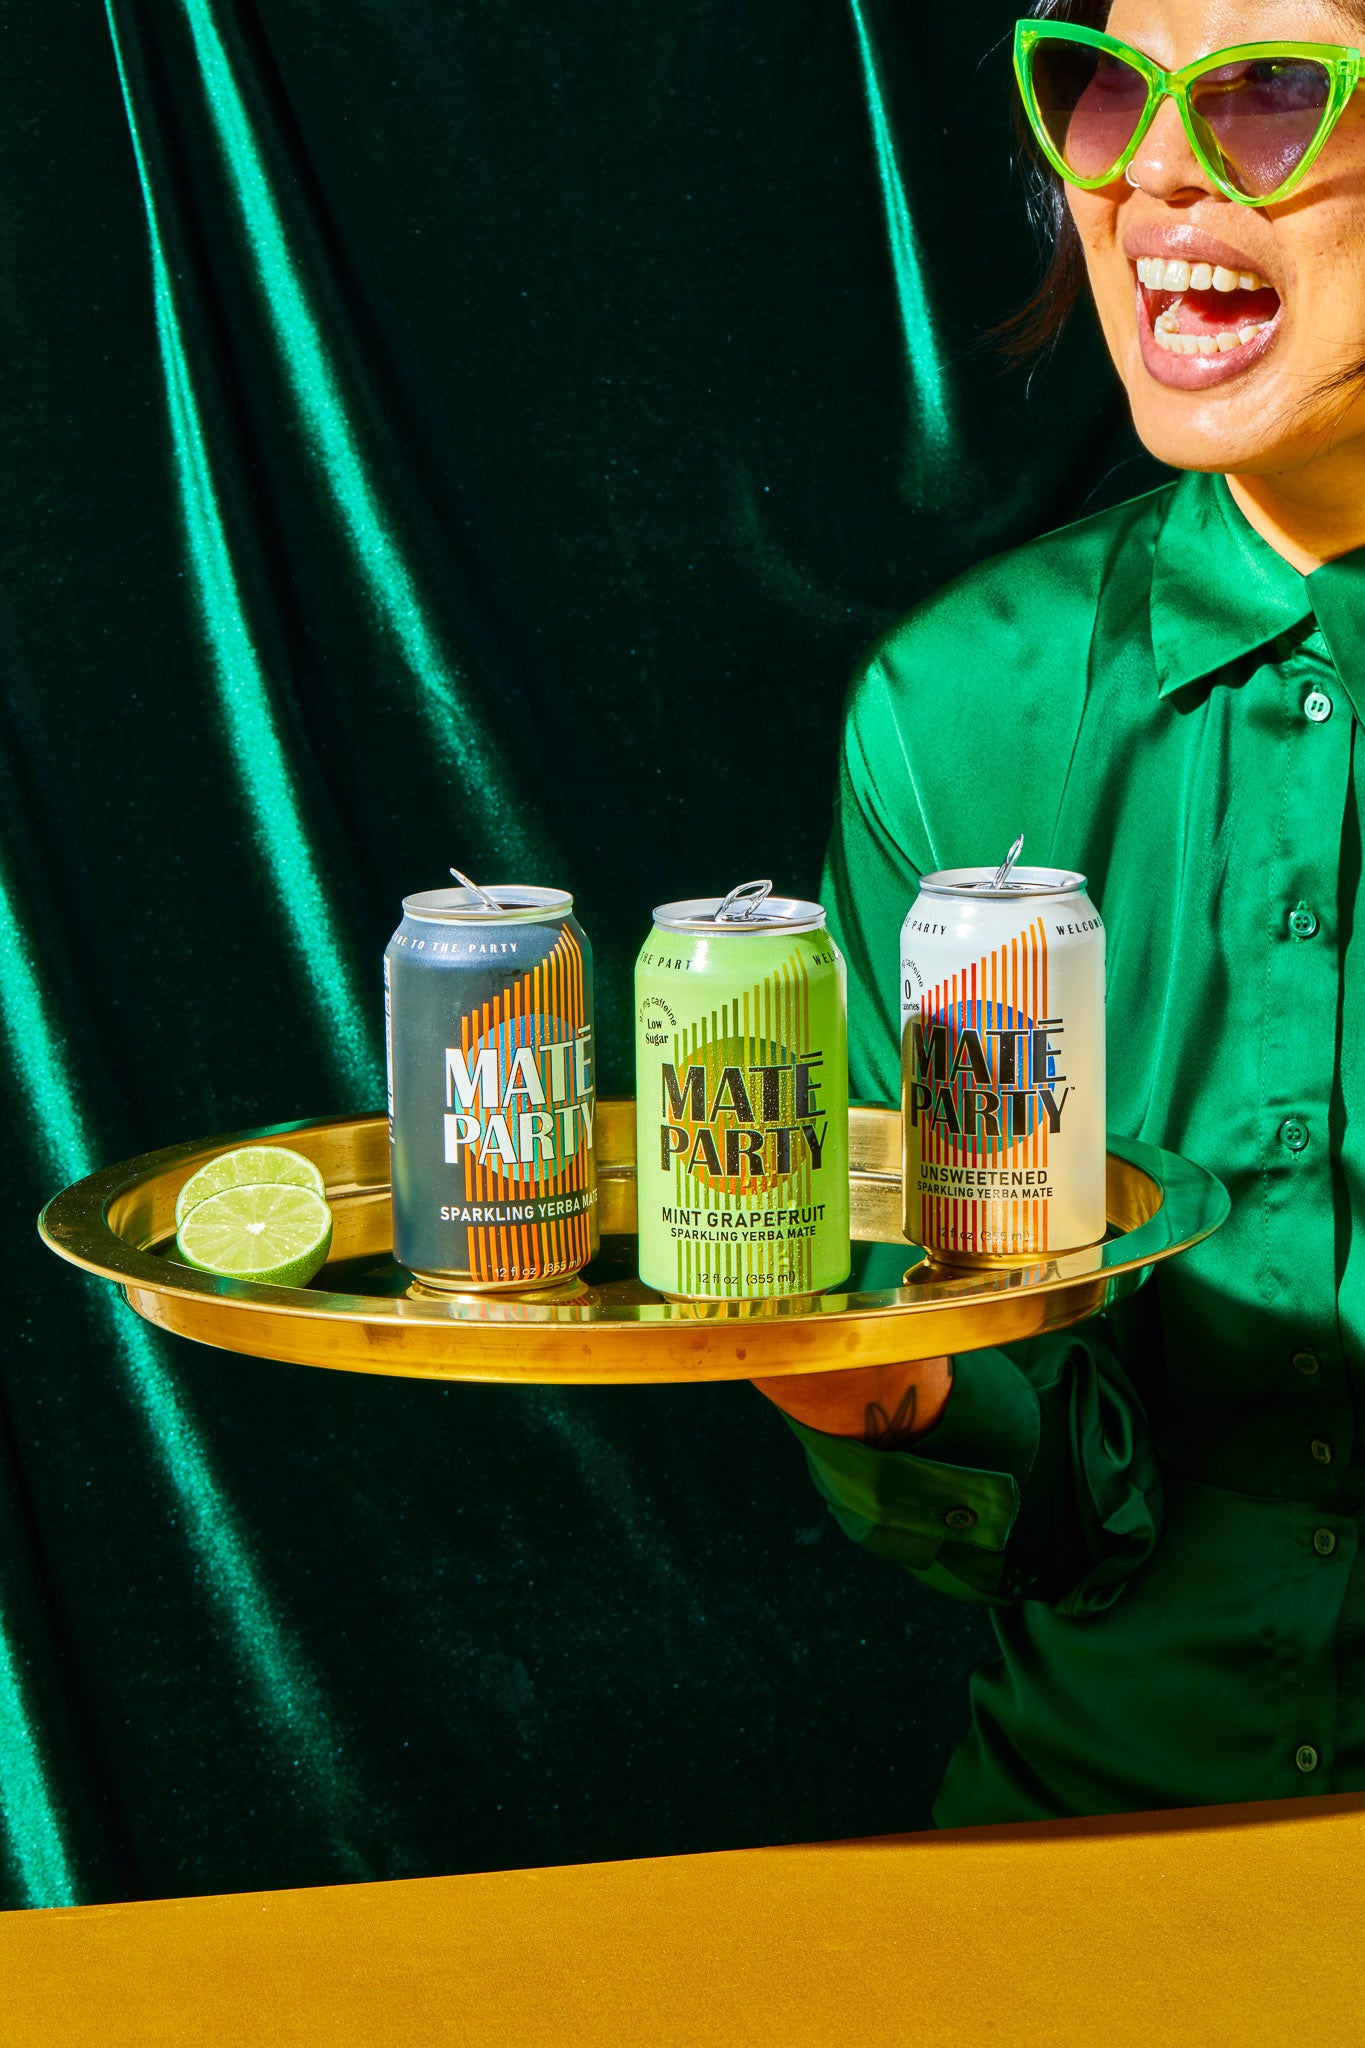 Mate-Party-Sparkling-Yerba-Mate-Club-Healthy-Energy-Drink-No-Sugar-Zero-Caleries